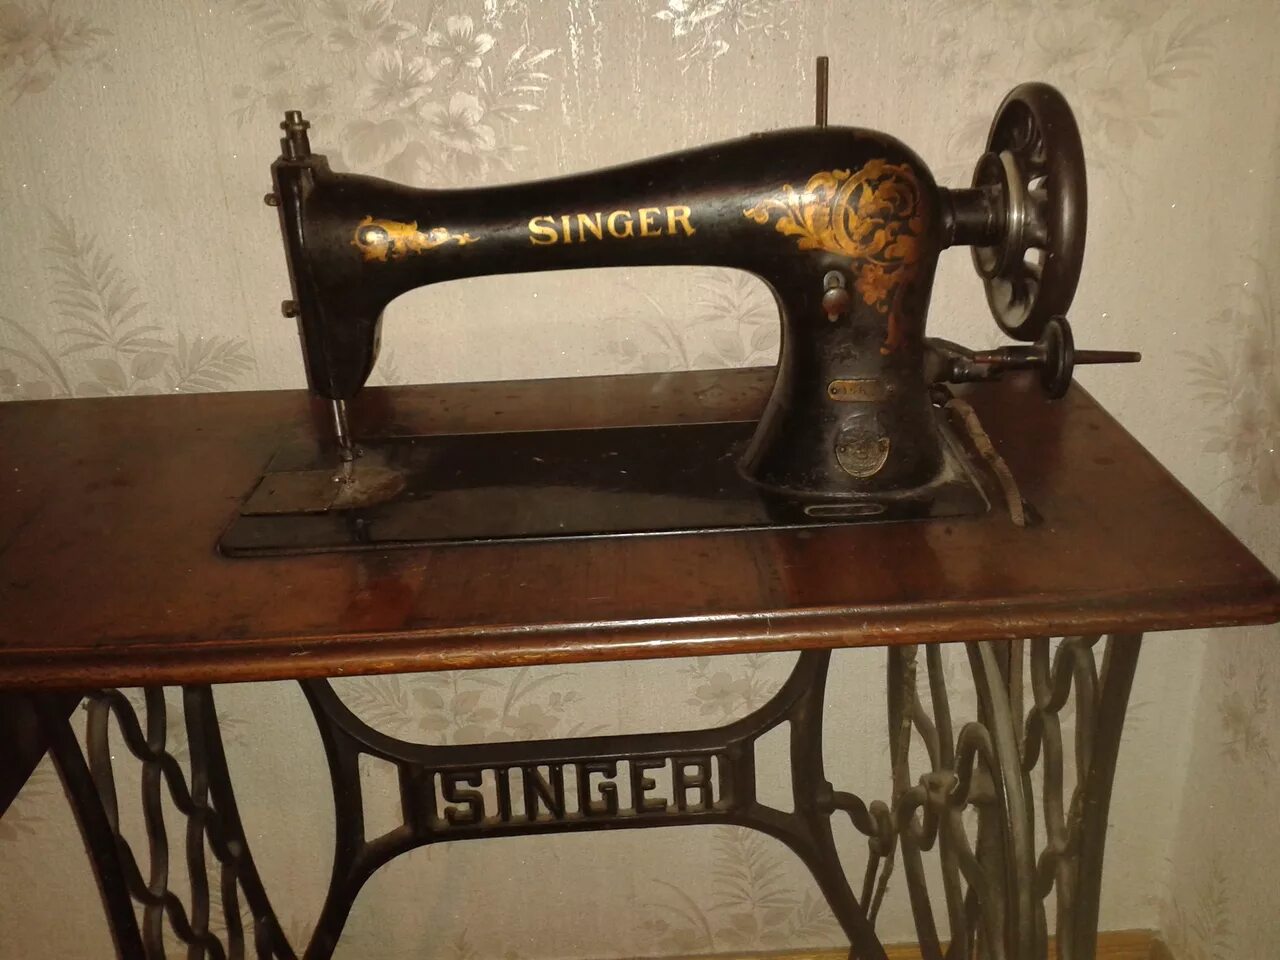 Швейная машинка Зингер s010l. Швейная машинка (Zinger super 2001). Швейная машинка Зингер 1902 года. Старинная швейная машинка Зингер. Швейная машинка зингер отзывы